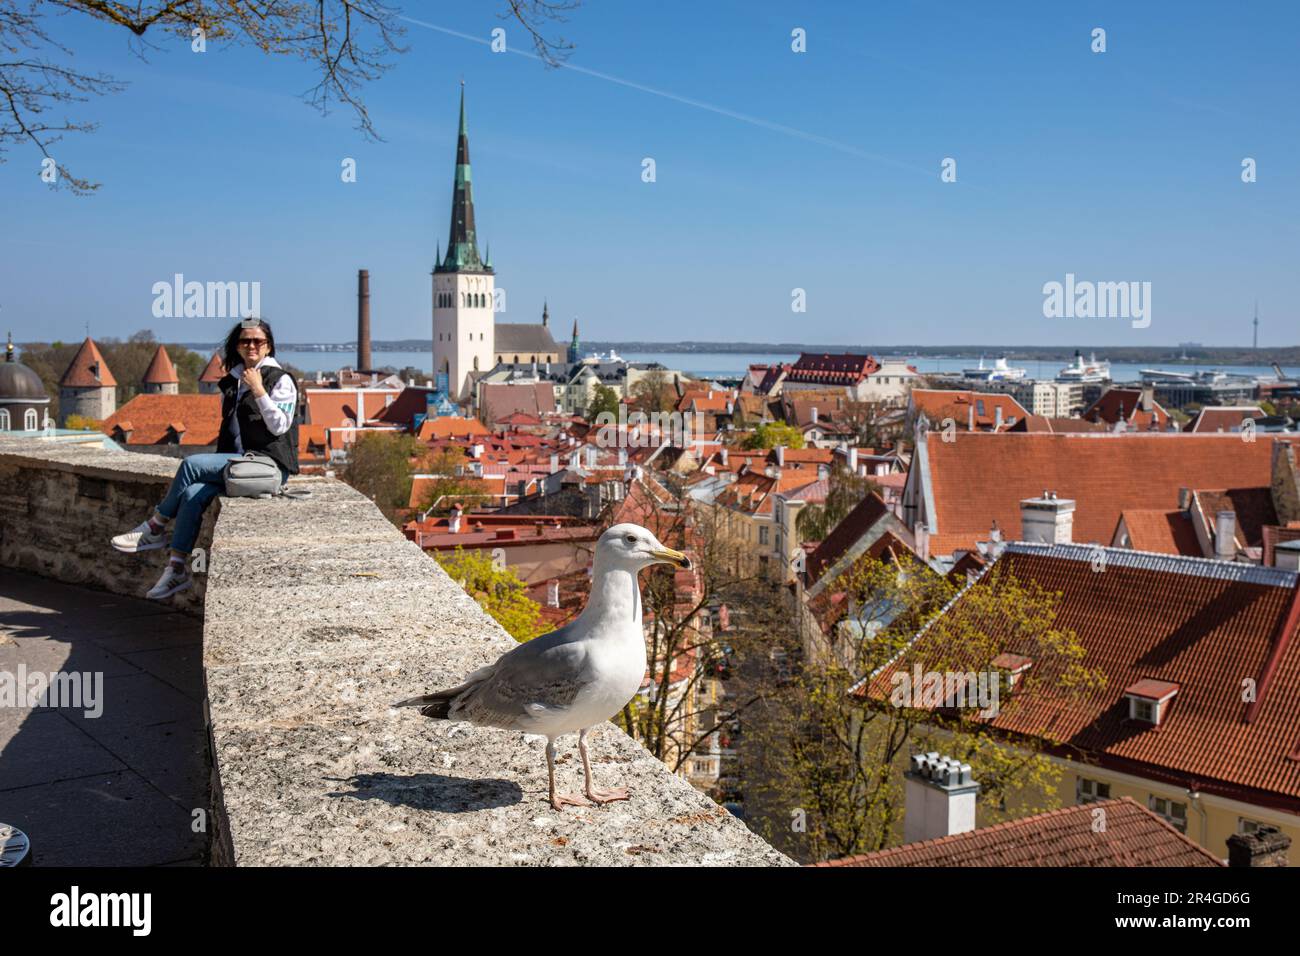 Une touriste féminine et un goéland argenté européen (Larus argentatus) sur le bord de la plate-forme d'observation de Kohtuotsa à Vanalinn, la vieille ville de Tallinn, Estonie Banque D'Images